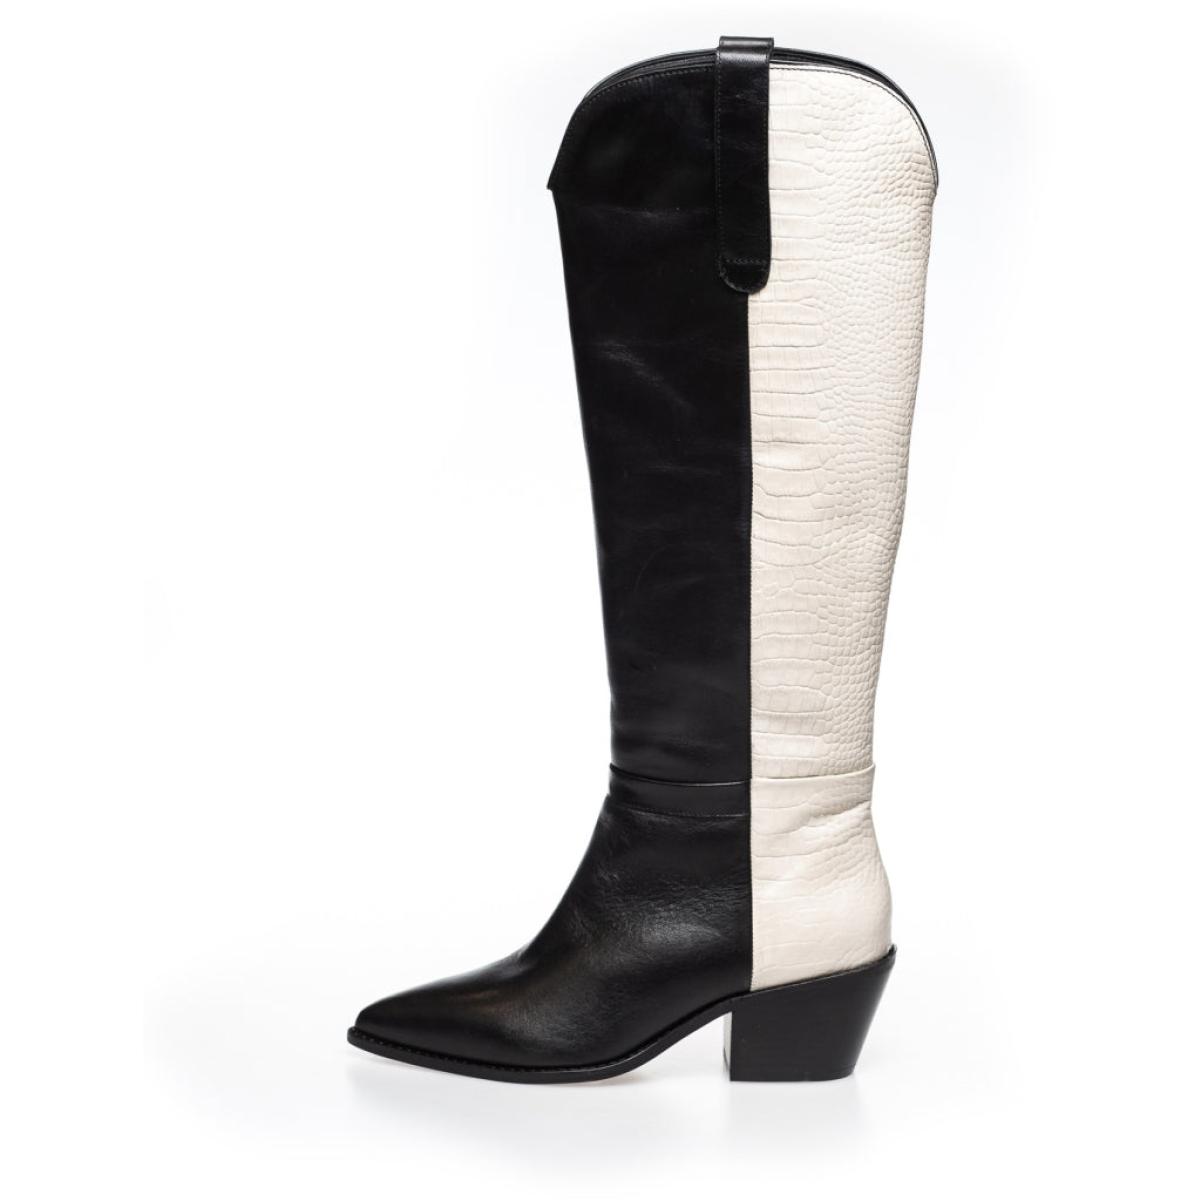 Refashion Long Boots Women Divided Multi - Black/Off White Copenhagen Shoes